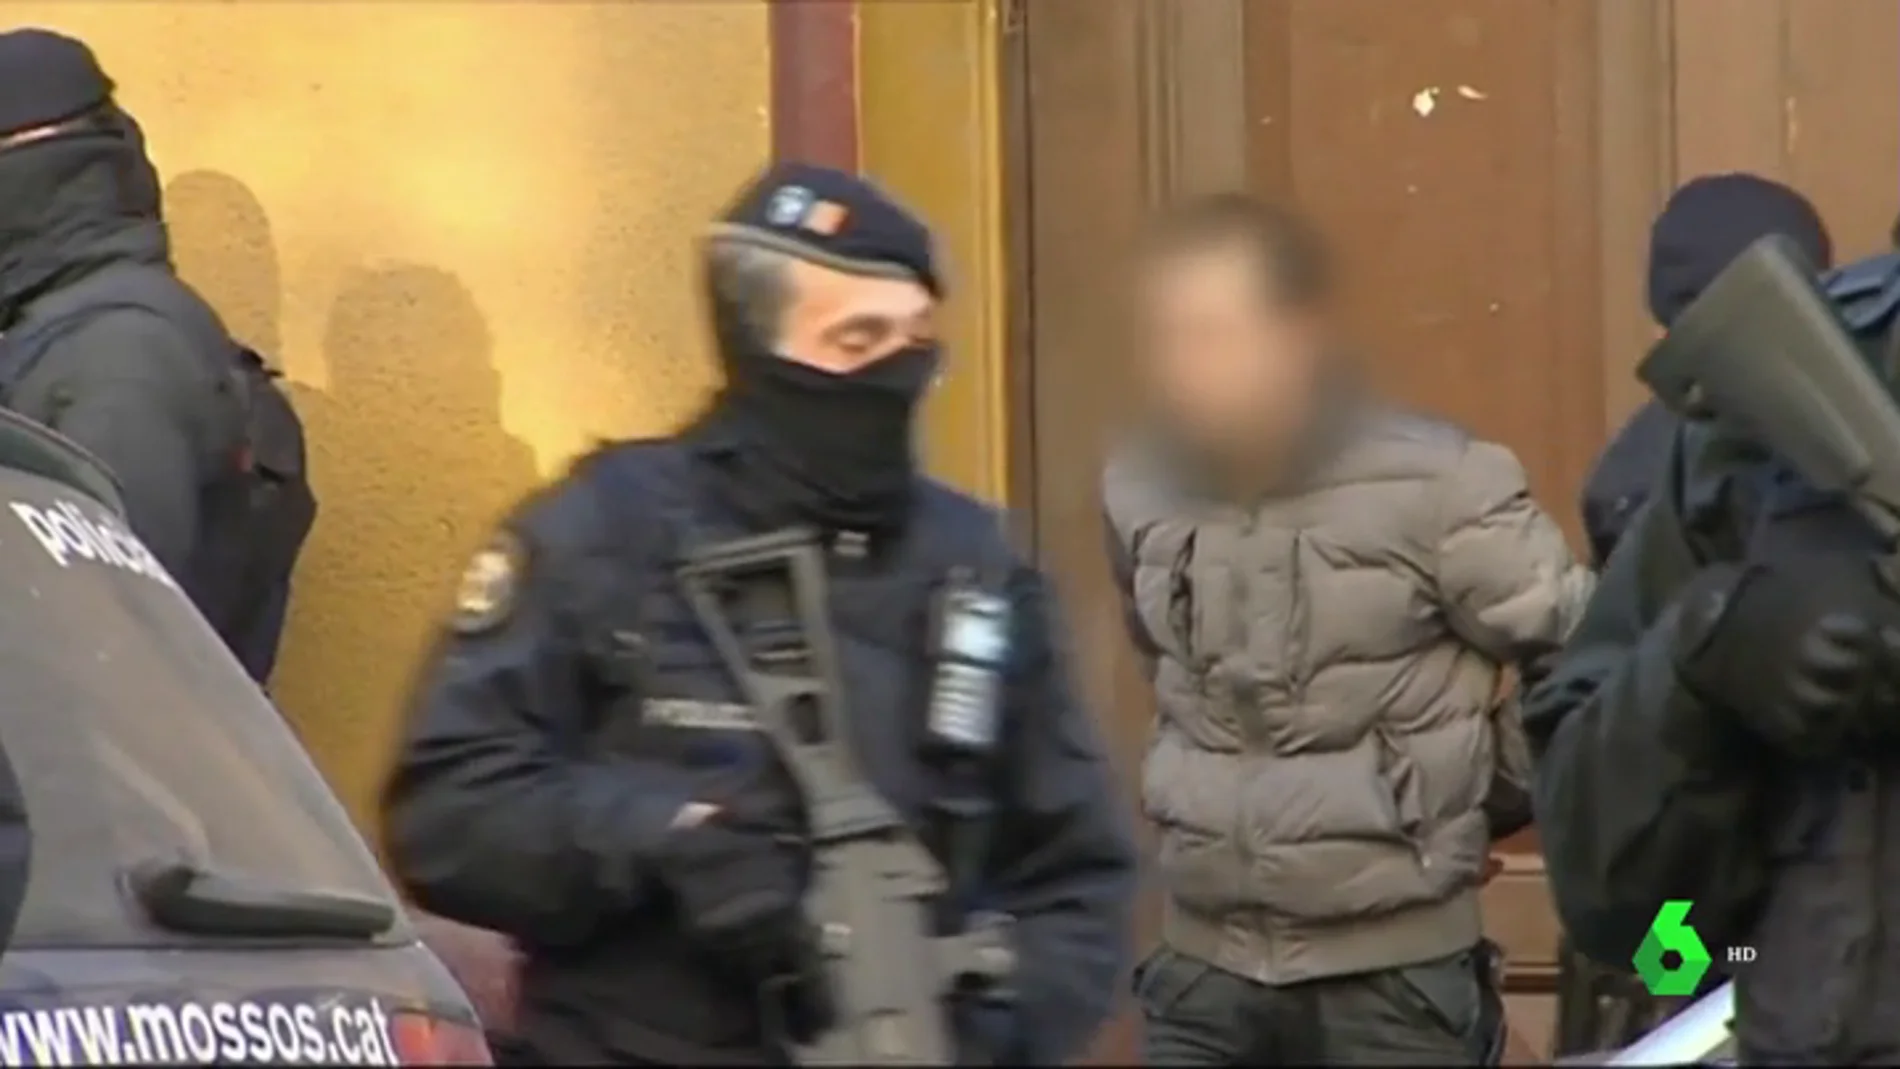 VÍDEO REEMPLAZO | Los Mossos desarticulan un célula yihadista en Barcelona con voluntad de atentar